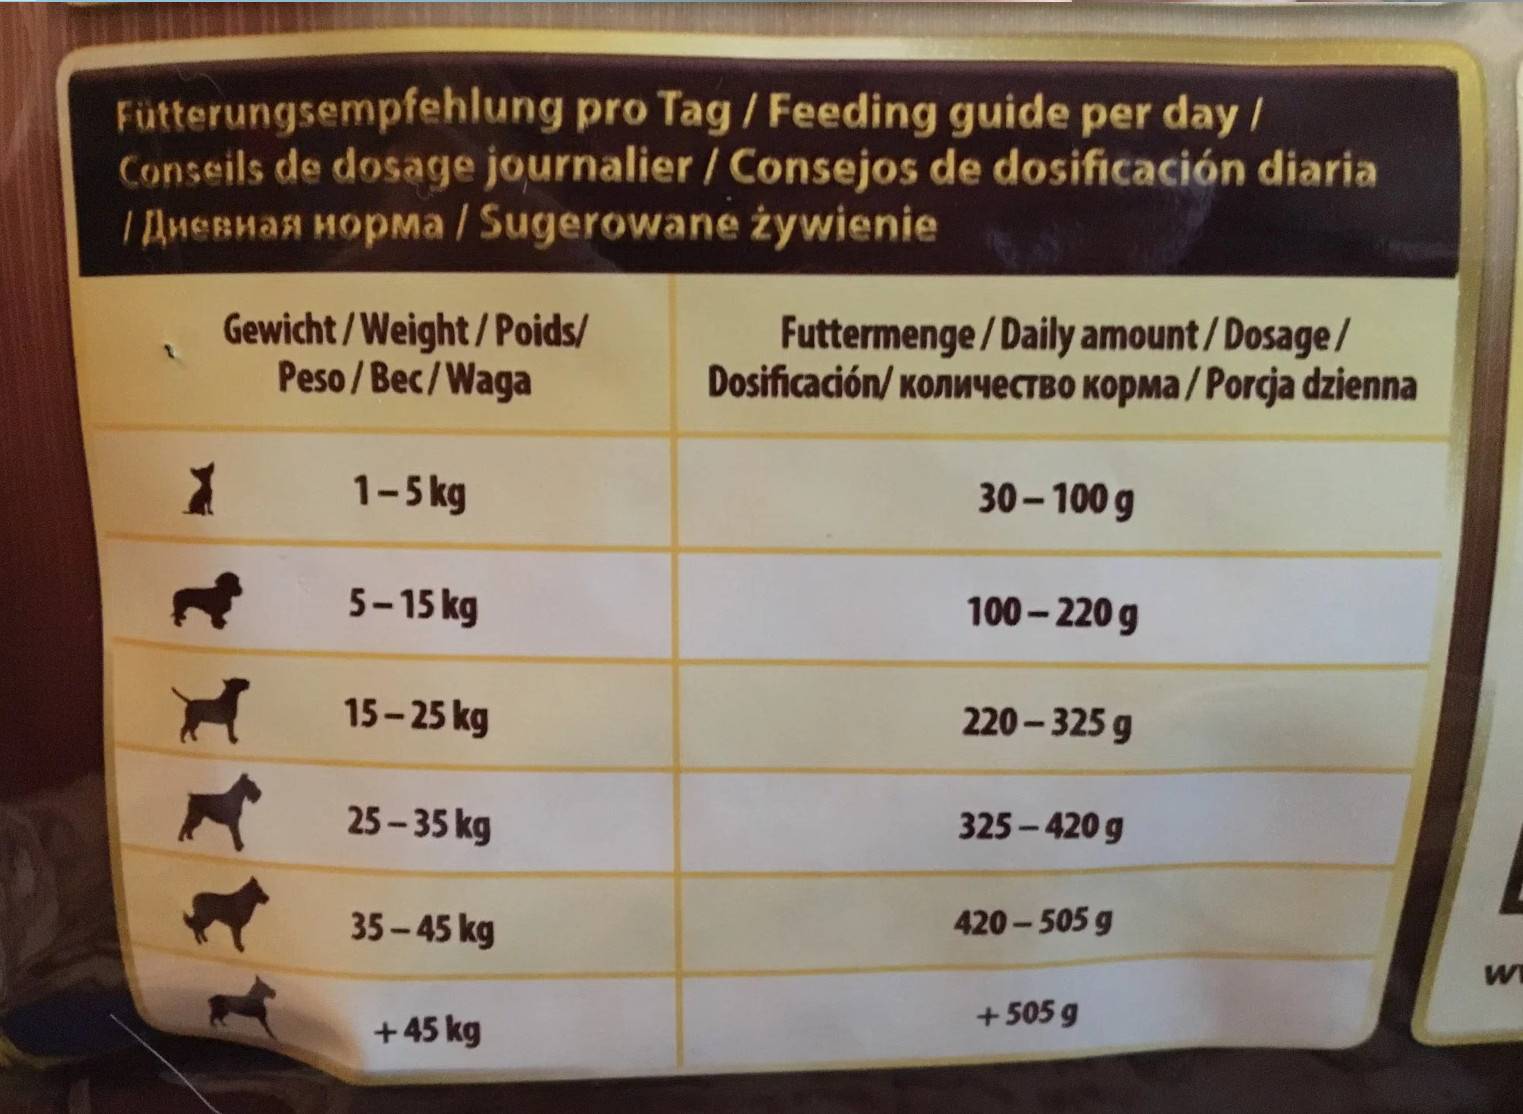 Wolfsblut корм для собак - без зерновой корм и разбор состава. отзывы покупателей и специалистов